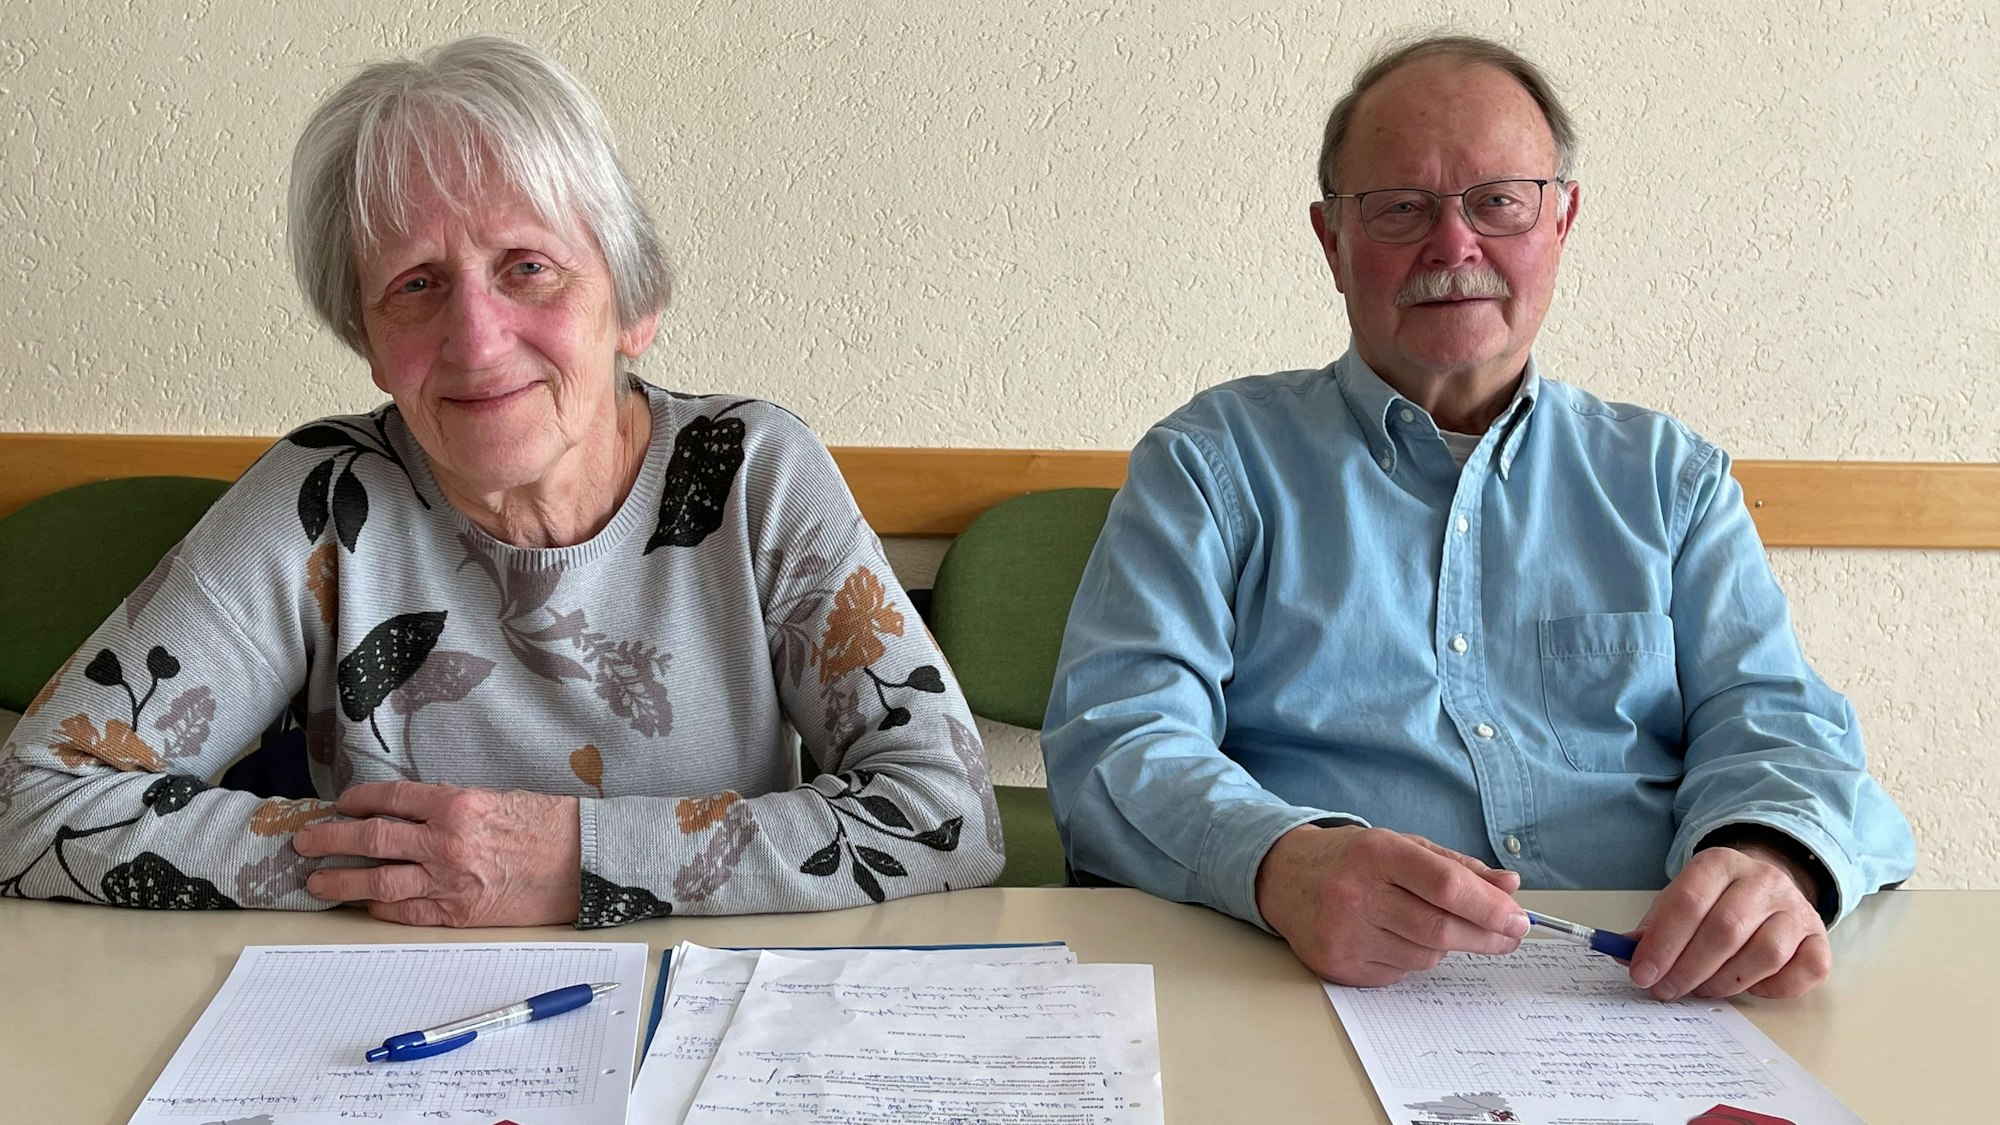 Seniorenvertretung Eitorf
Dr. Renate Dietz und Peter Dreger